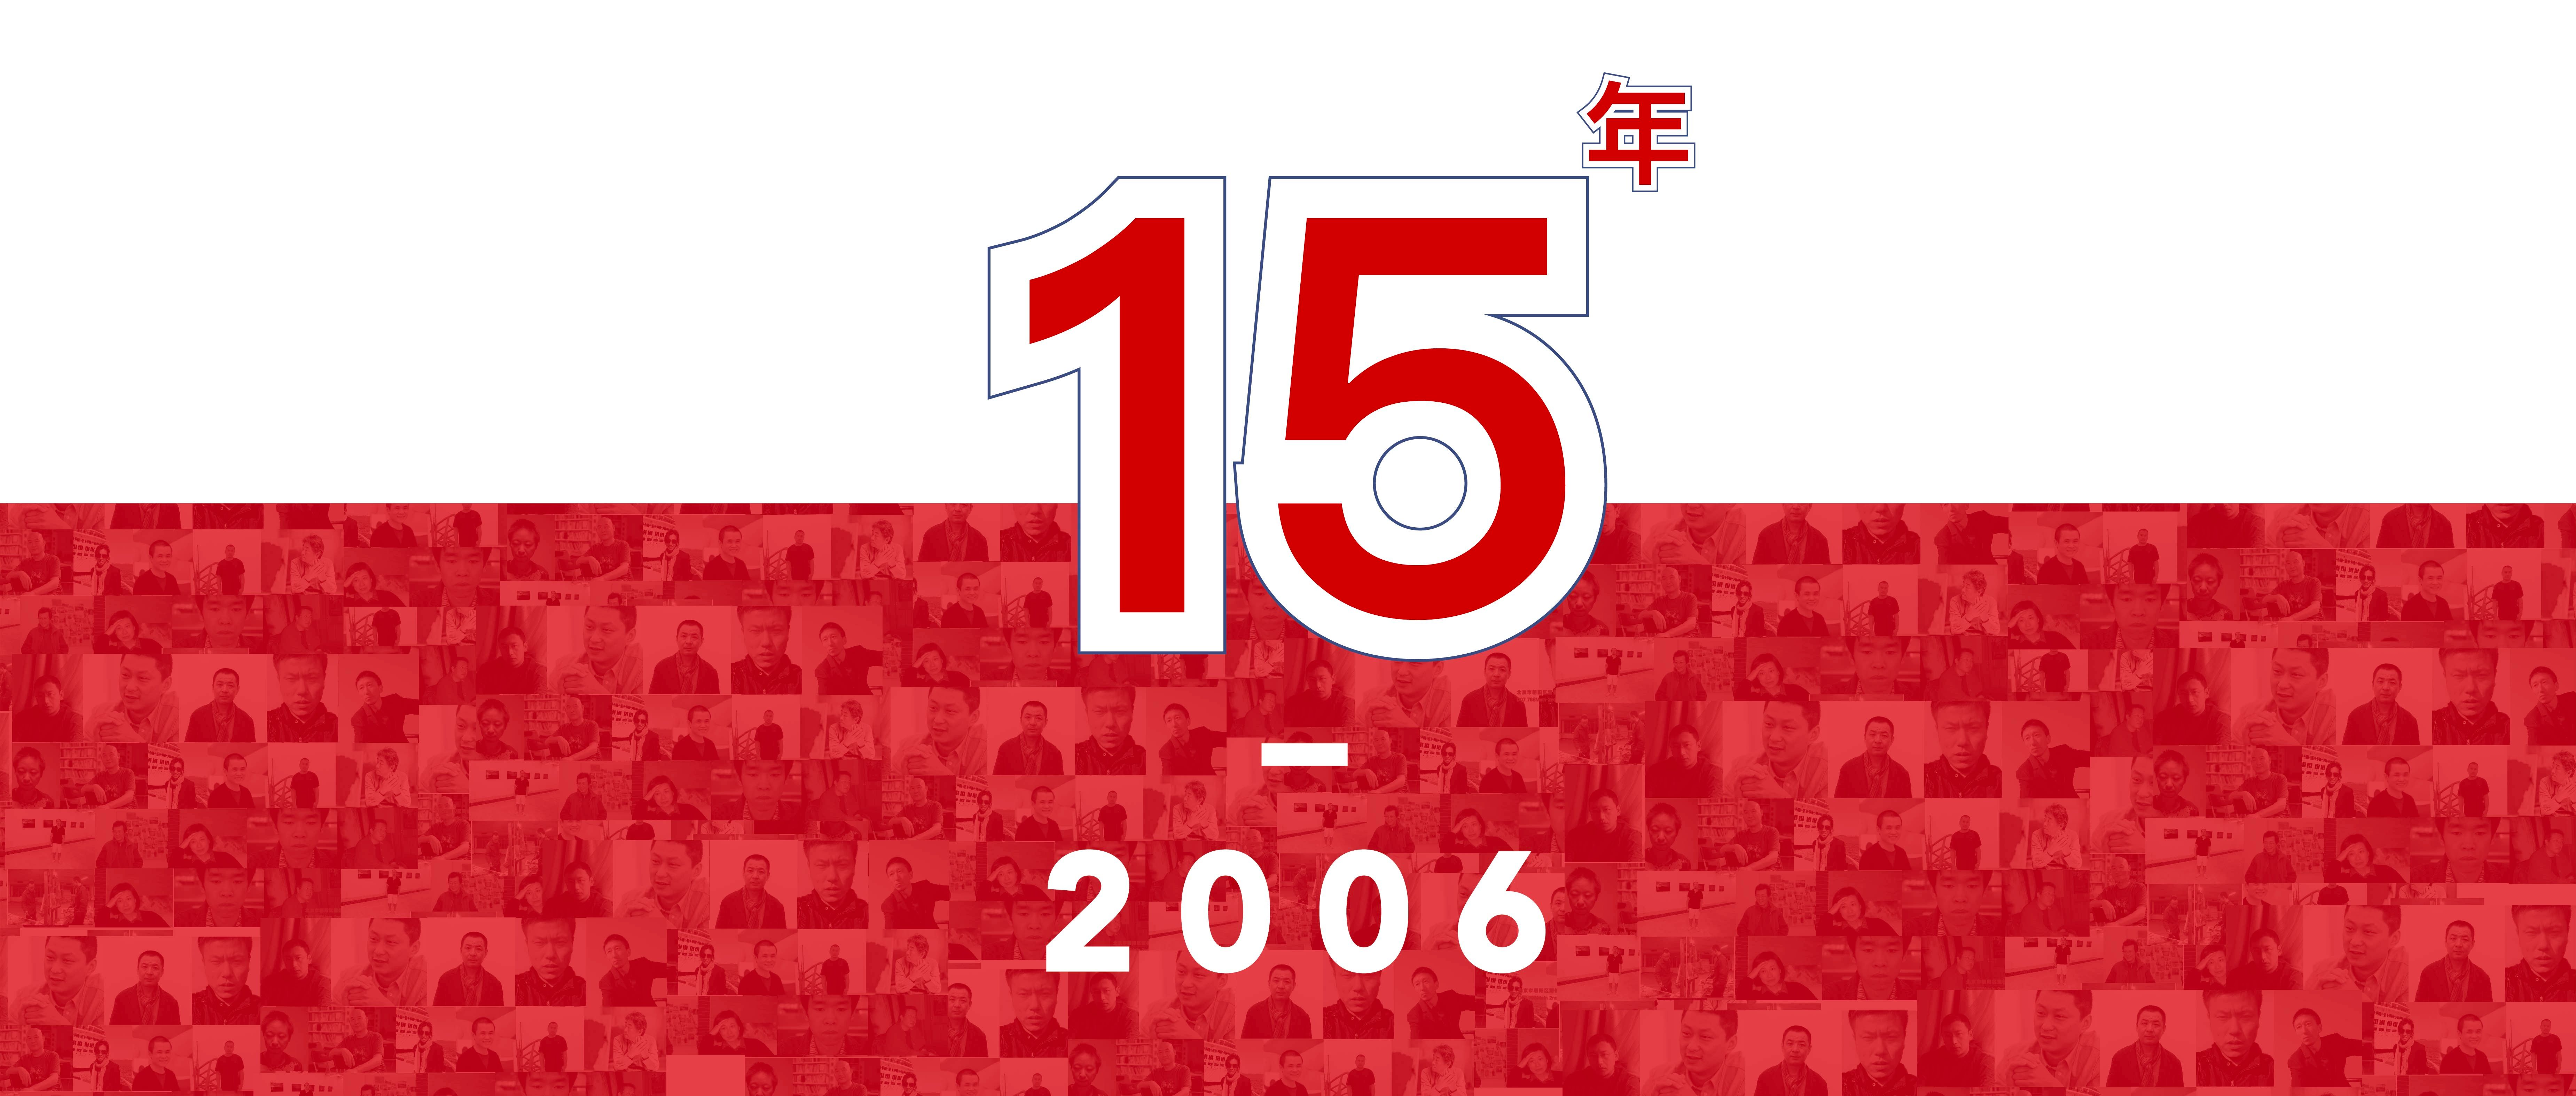 站台中国十五周年丨展览线上回顾“2006年”